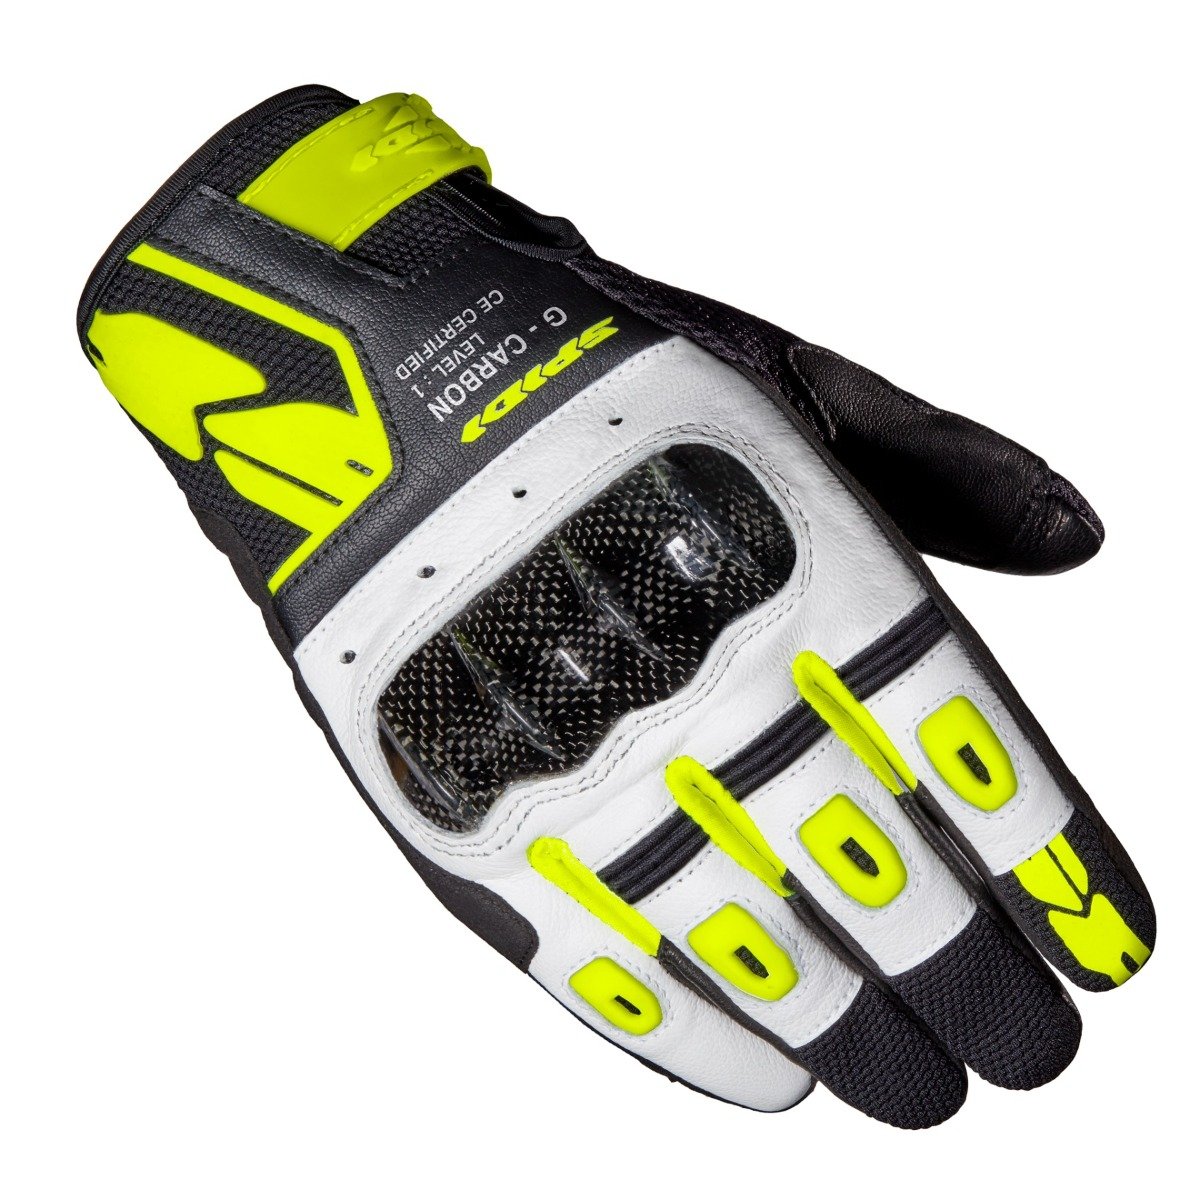 Image of Spidi G-Carbon Schwarz Fluo Gelb Handschuhe Größe XL